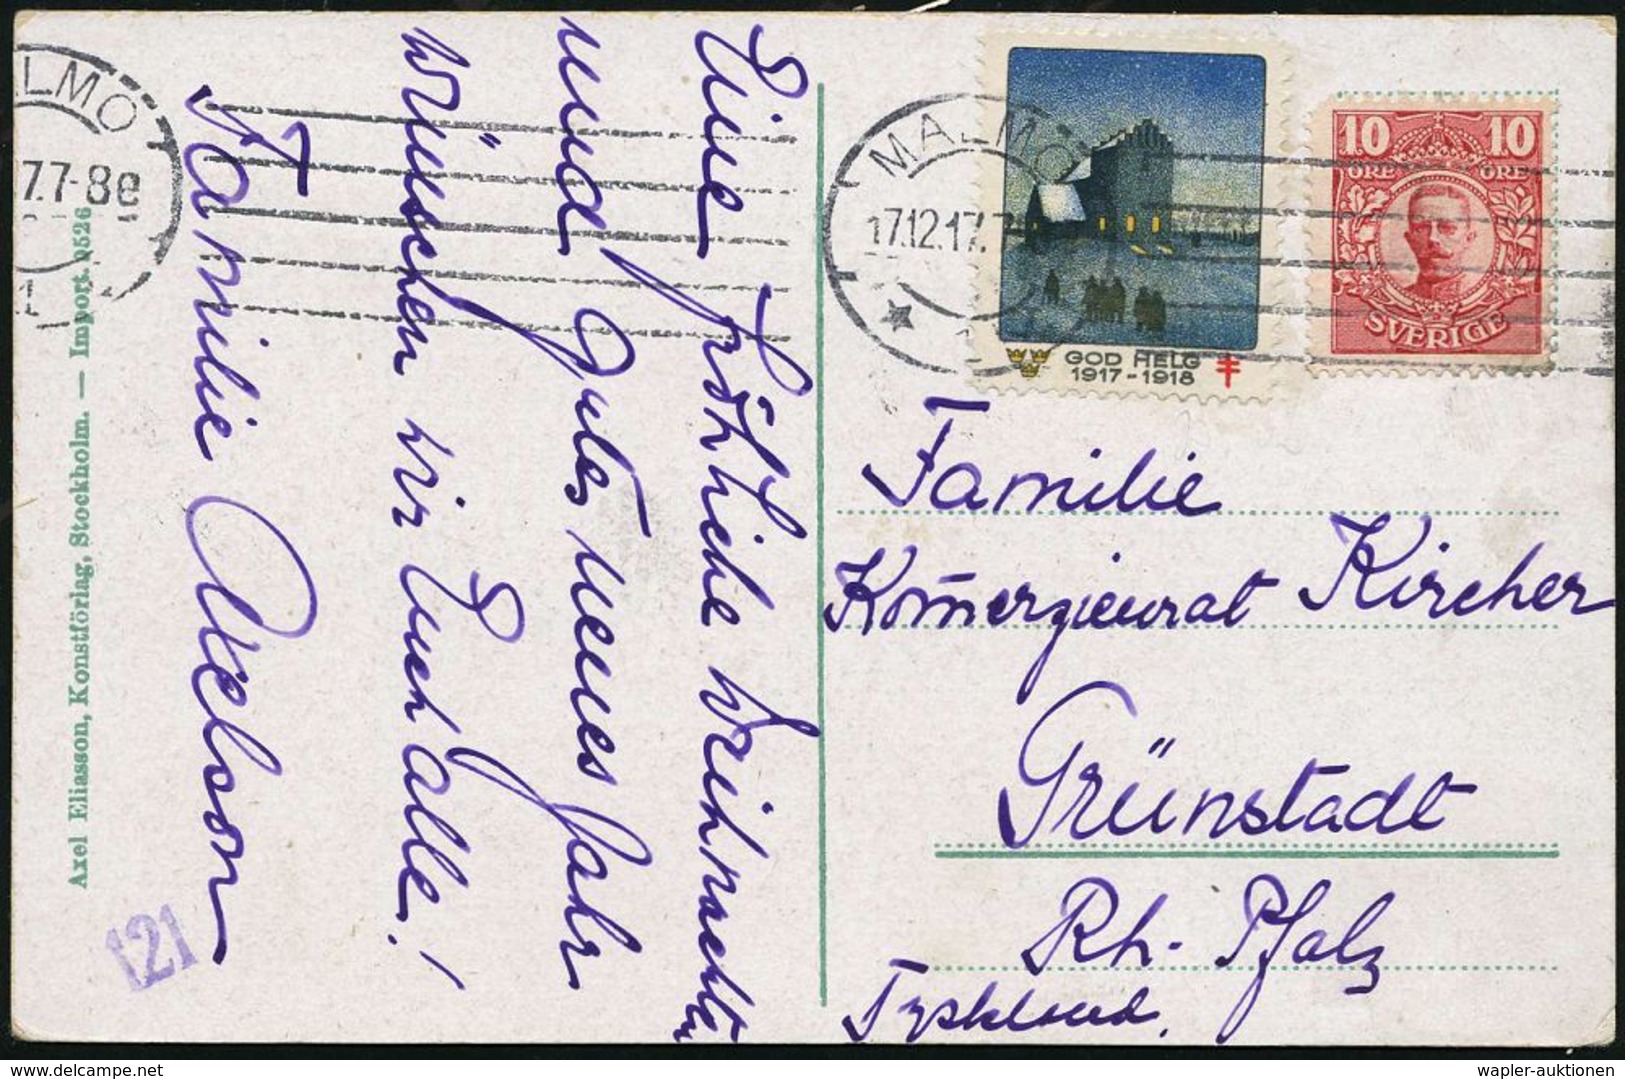 TUBERKULOSE / TBC-VORSORGE : SCHWEDEN 1917 (17.12.) 10 Ö. + Tbc-Weihnachts-Spendenmke.: GOD HELG 1917-1918 (Kirche) Abge - Maladies